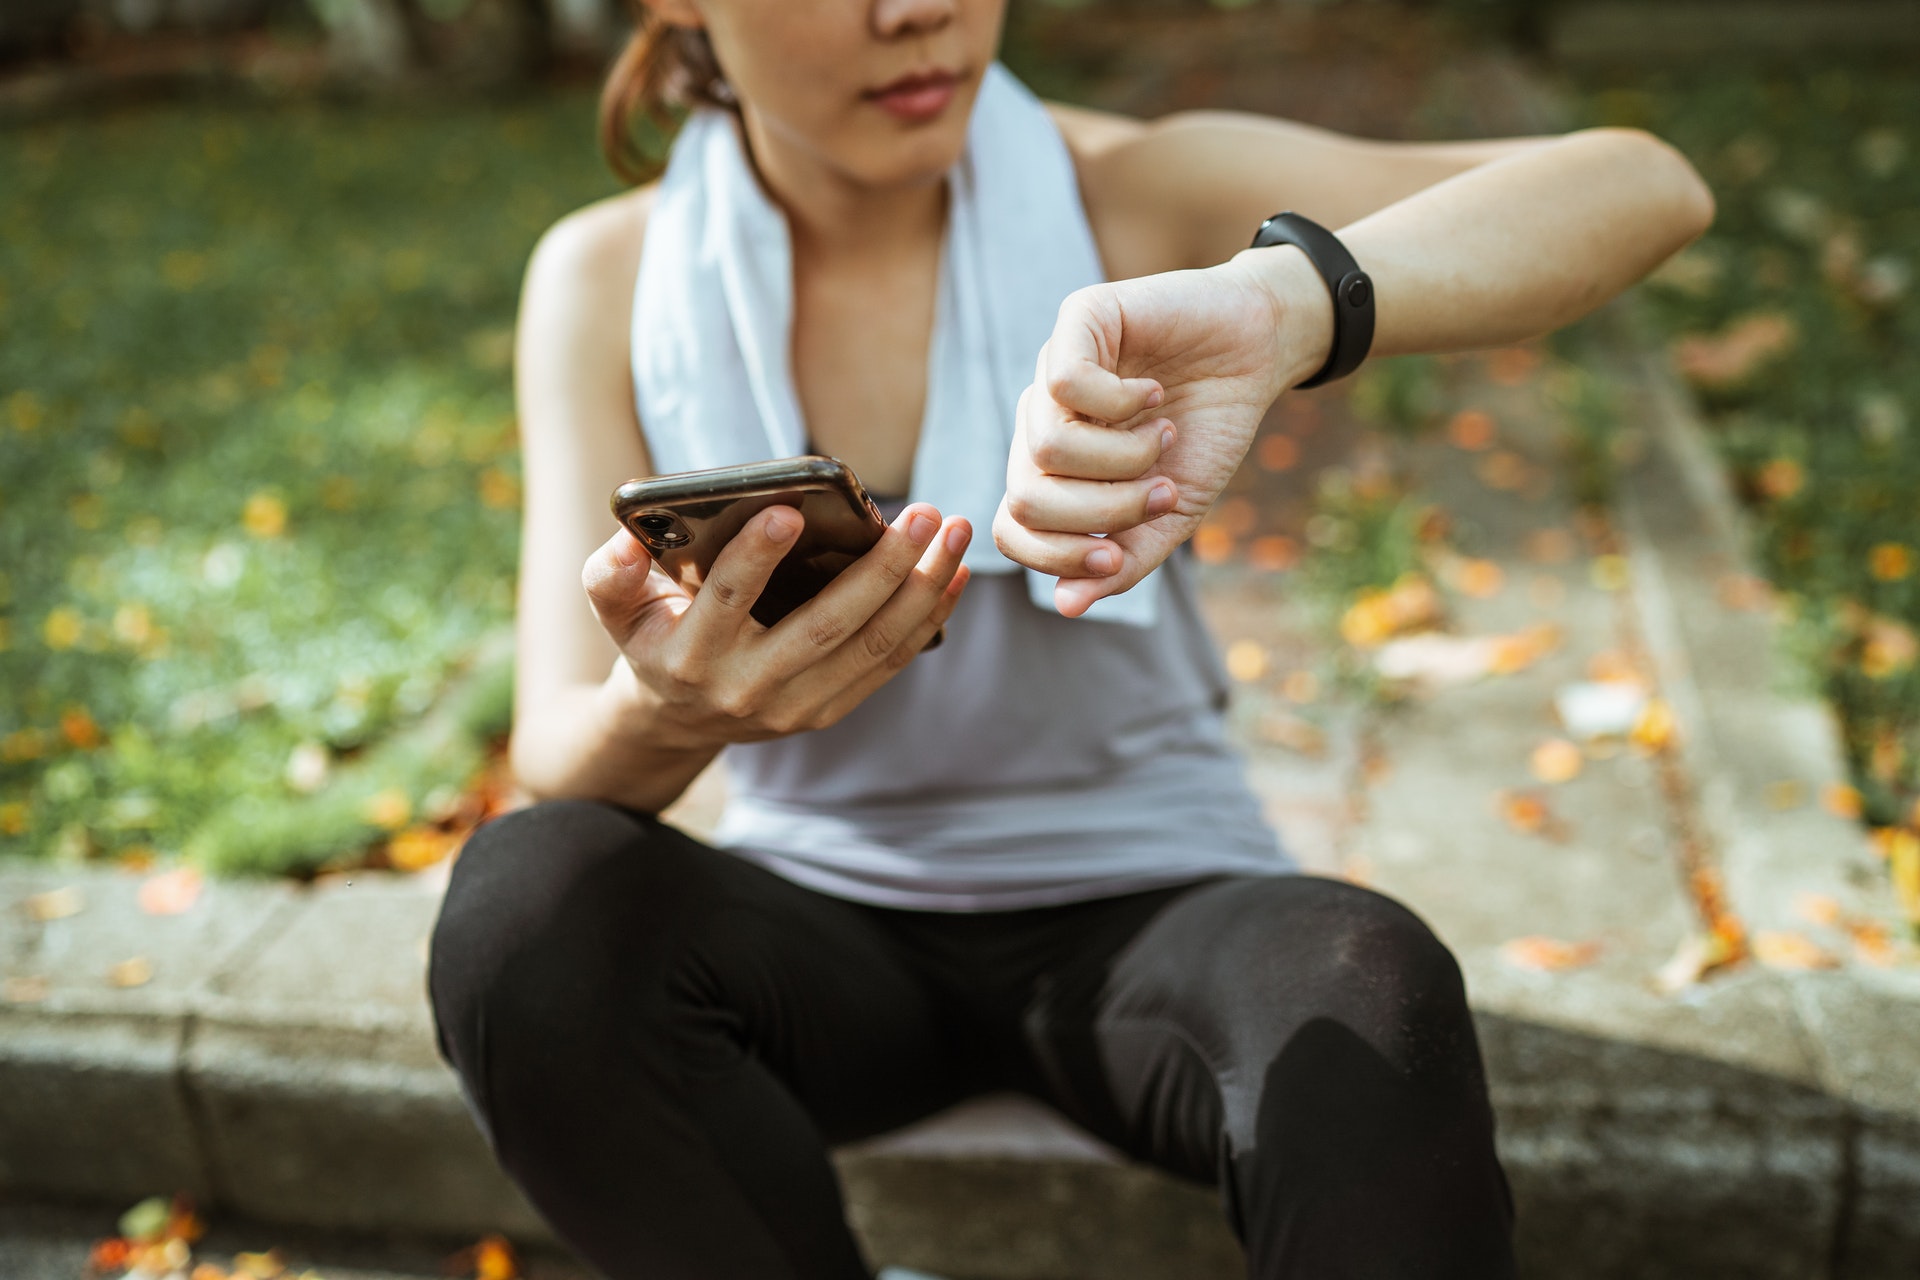 Una donna fa il pairing tra smartphone e smartband durante una sessione di jogging